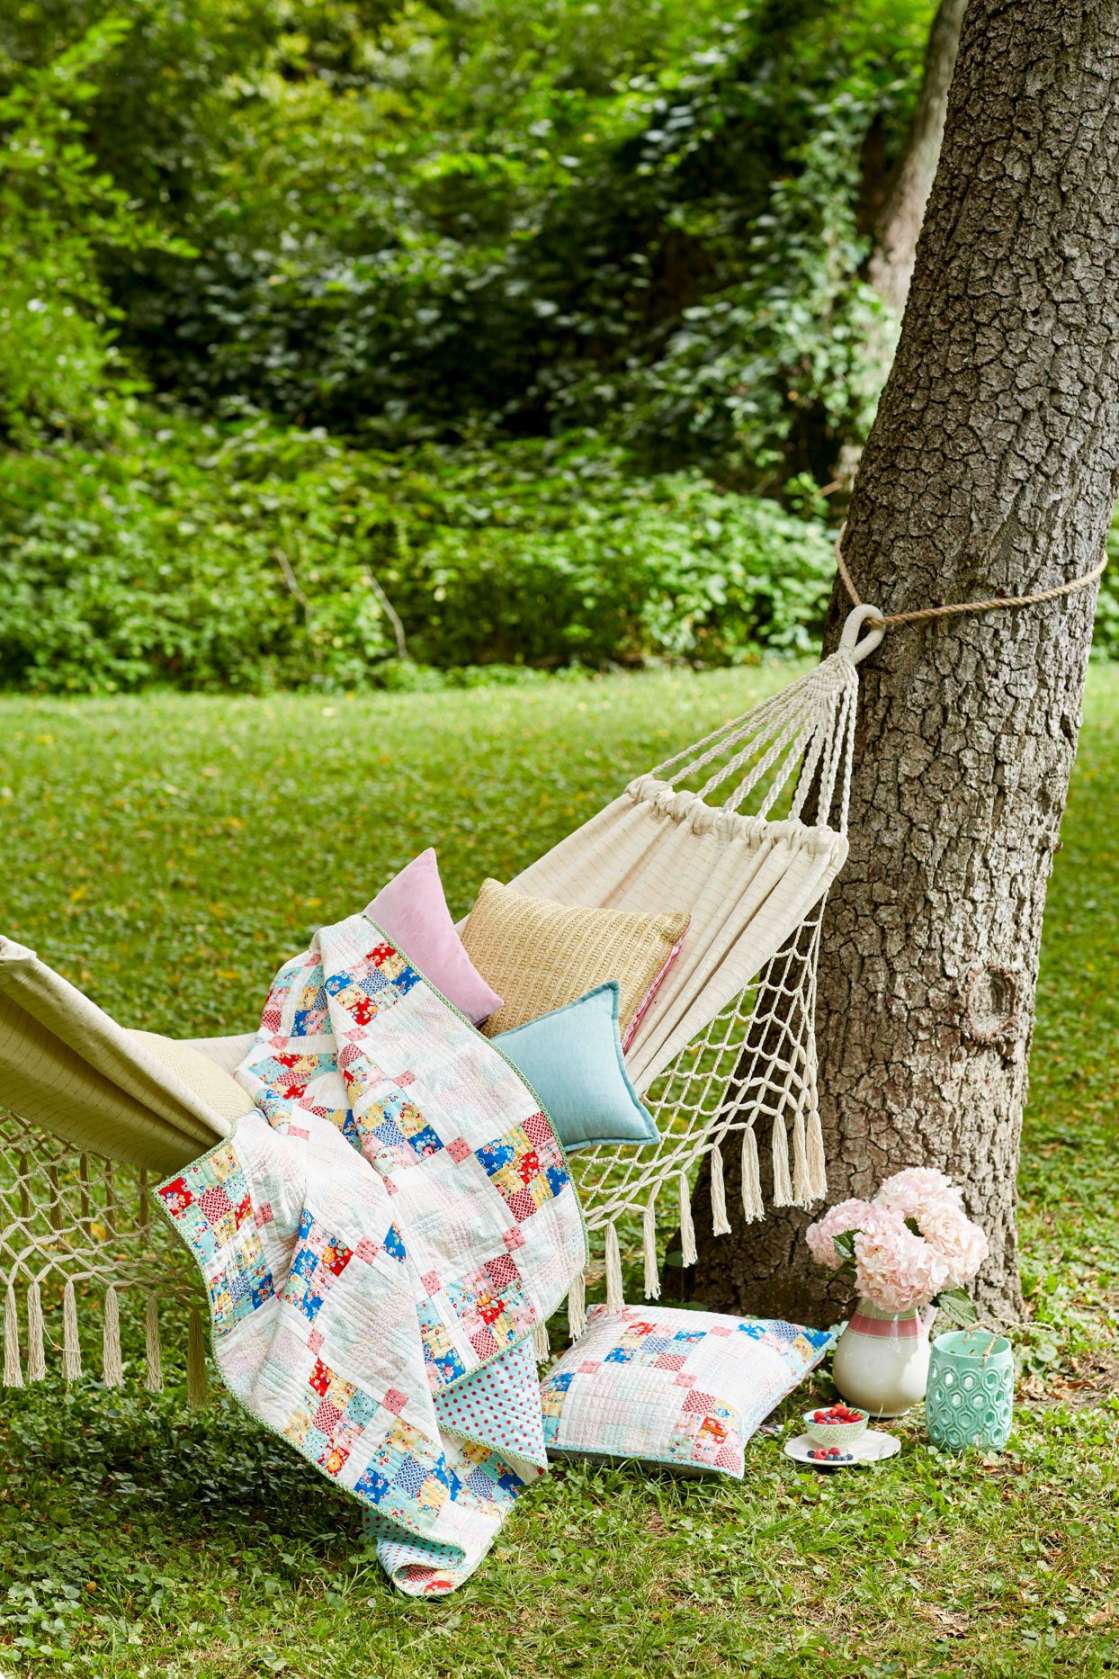 Backyard Hammock Ideas for a Relaxing Escape